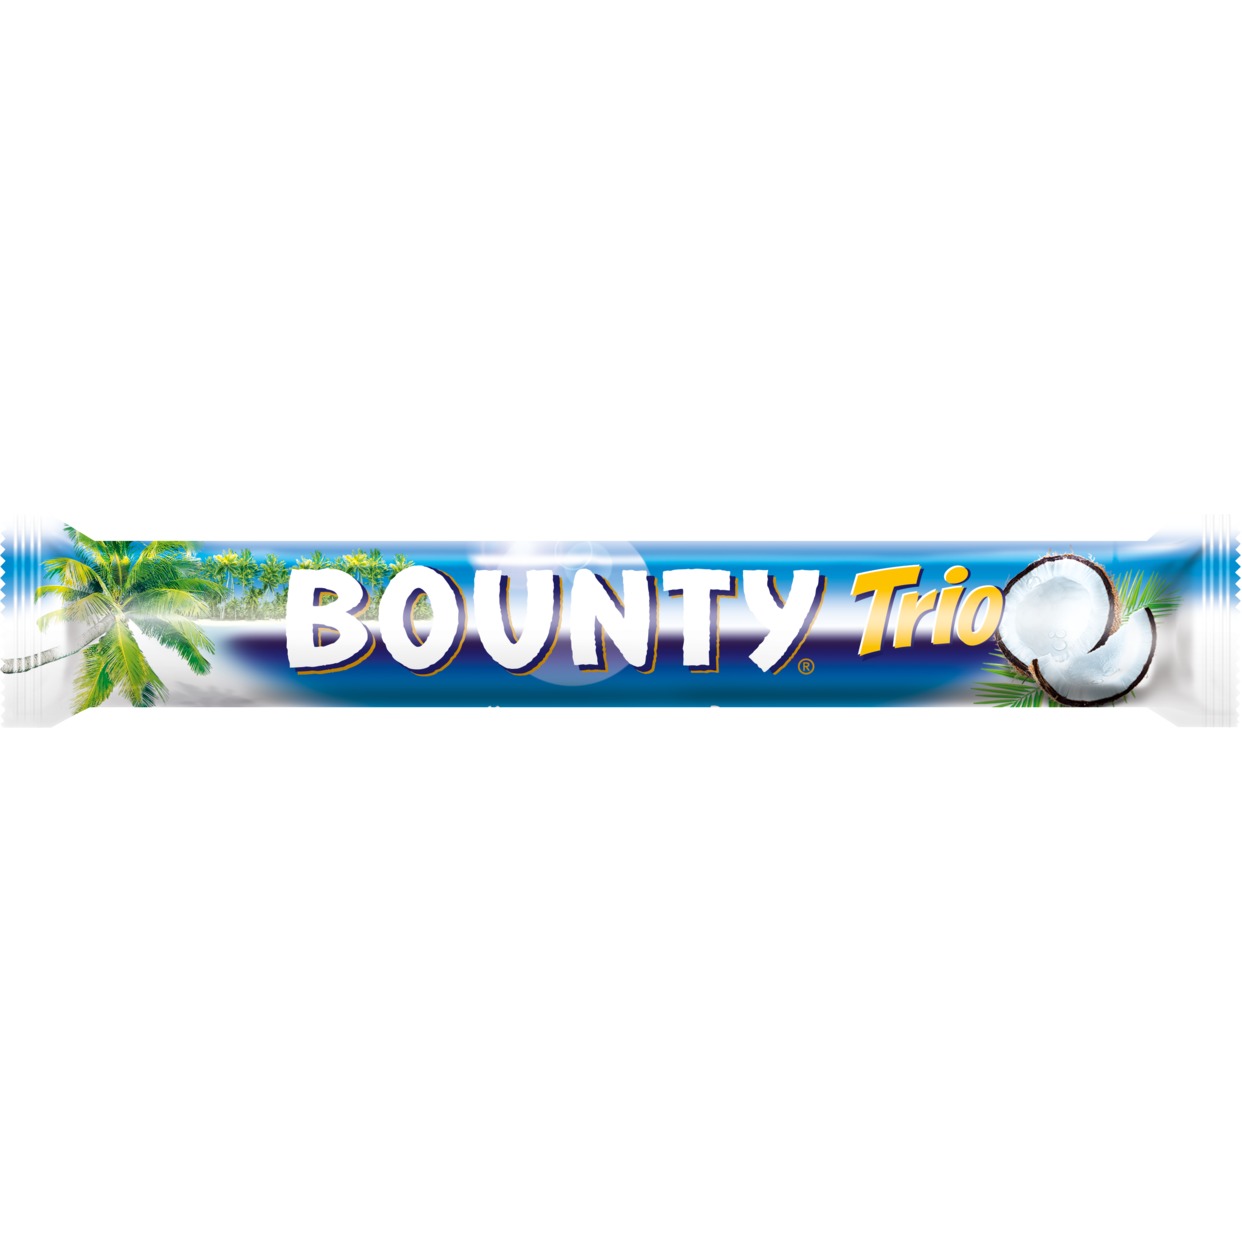 Шоколадный батончик, Bounty Трио, 82,5 г по акции в Пятерочке